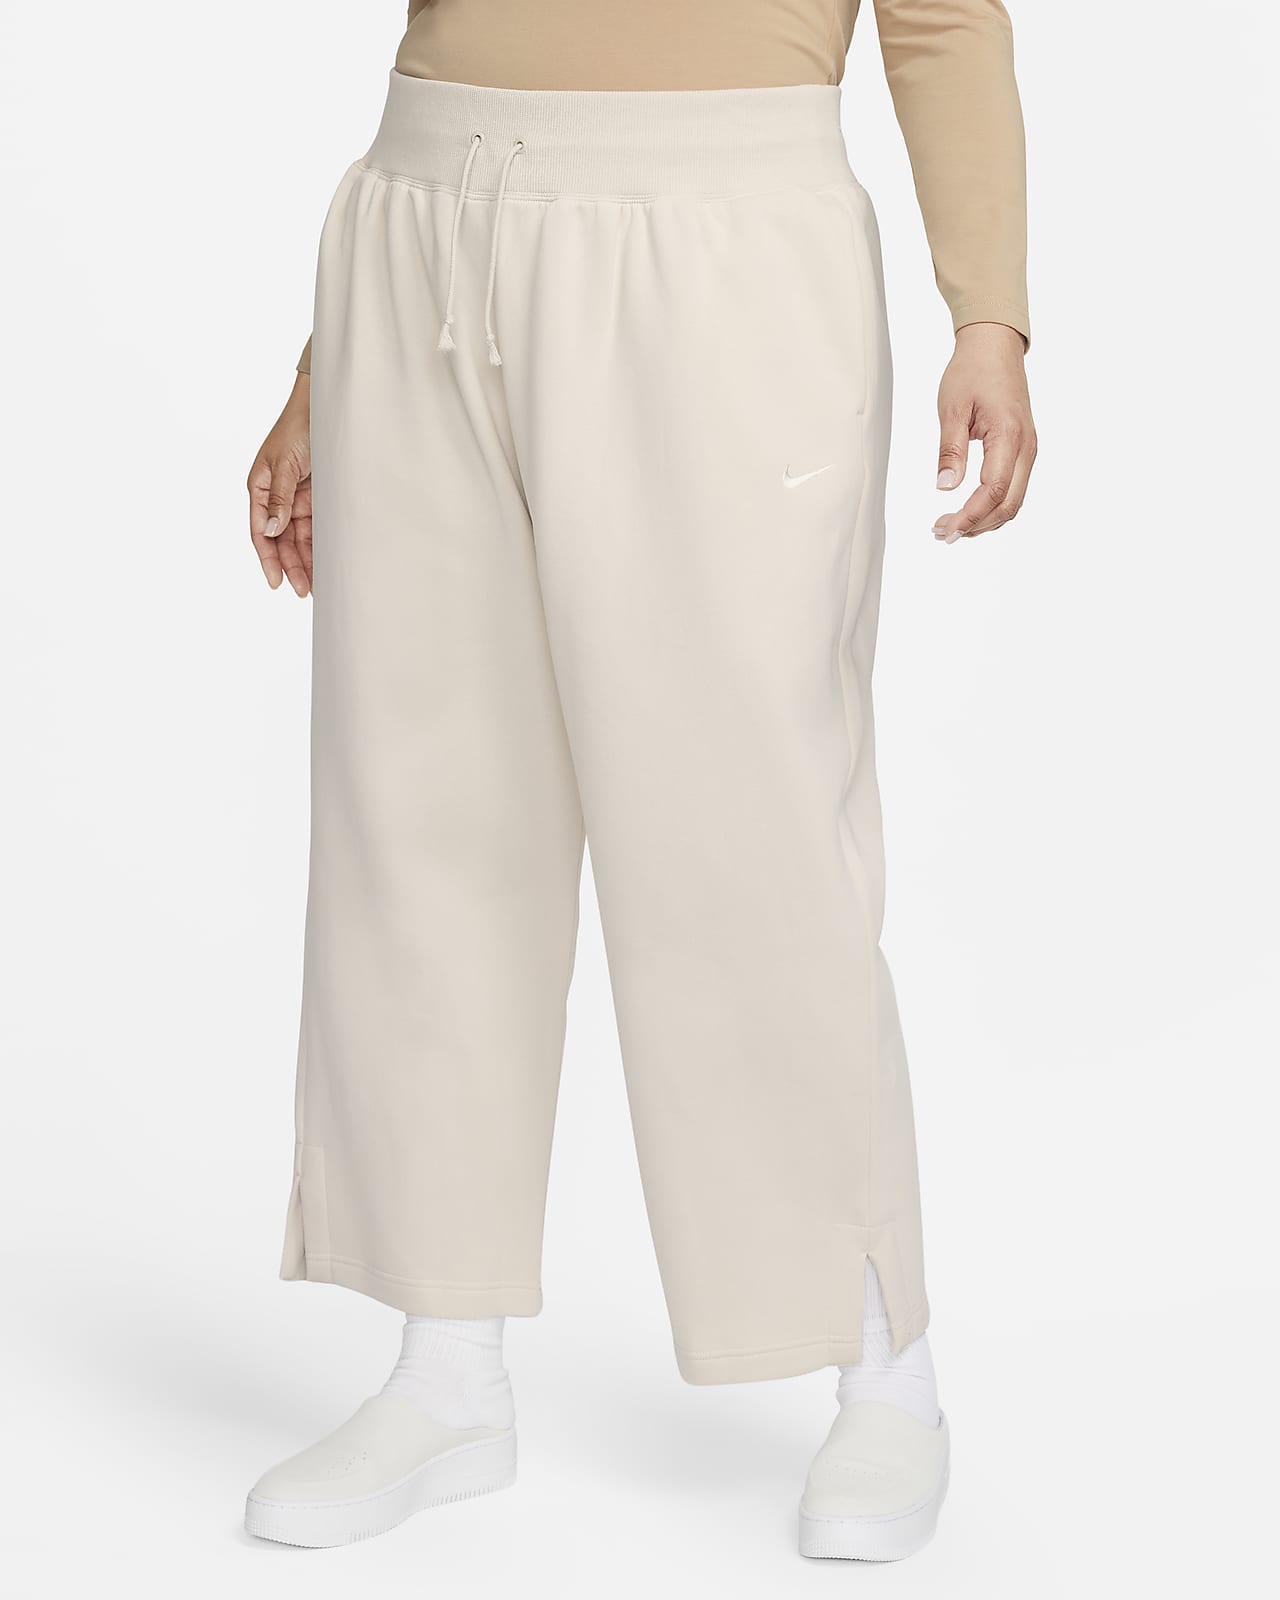 Nike Sportswear Phoenix Fleece magas derekú, széles szárú női melegítőnadrág (plus size méret)